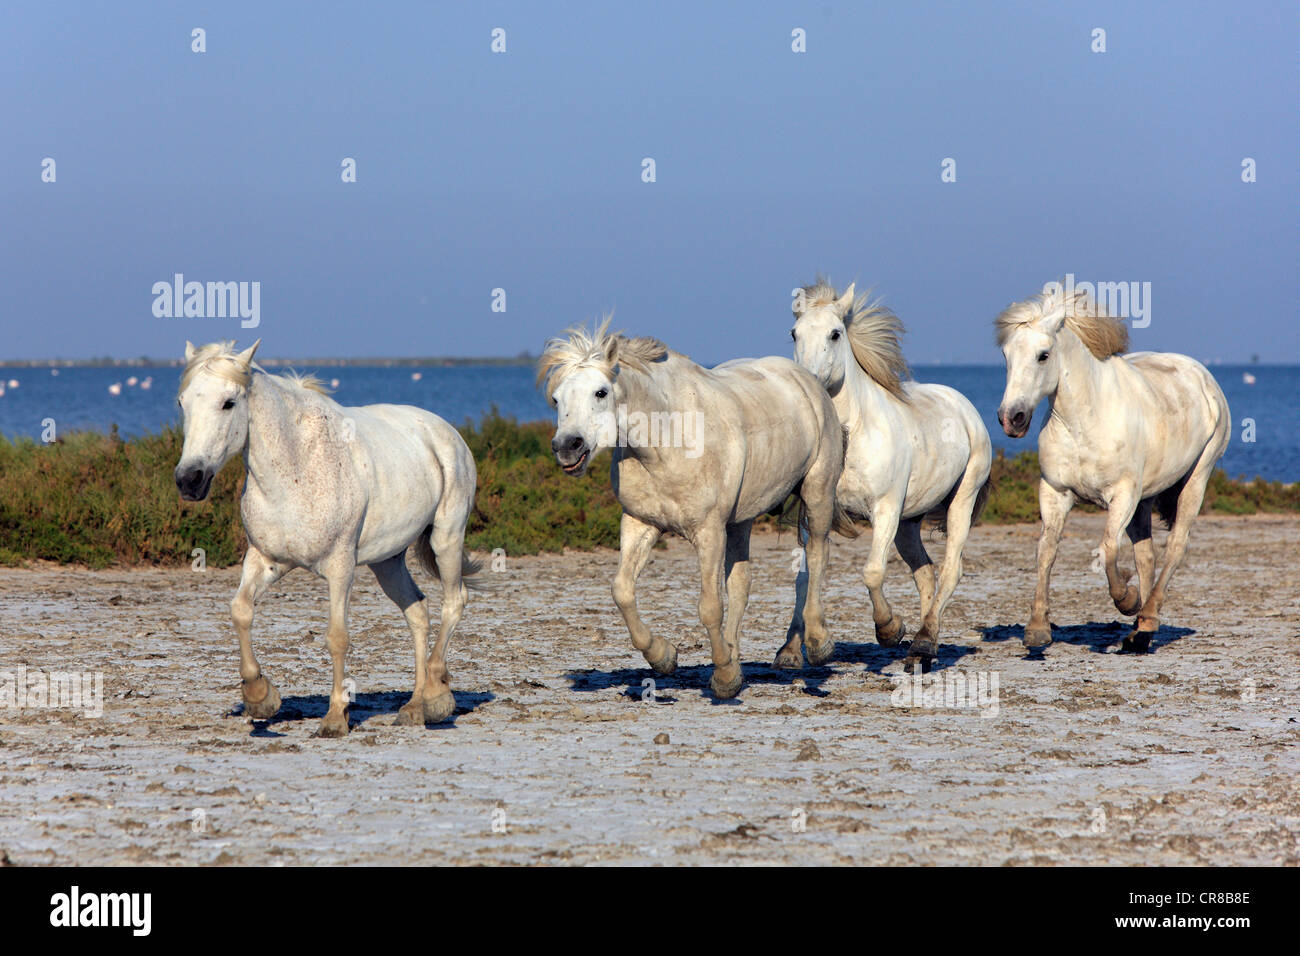 Chevaux Camargue (Equus caballus), les Saintes Maries-de-la-Mer, Camargue, France, Europe Banque D'Images